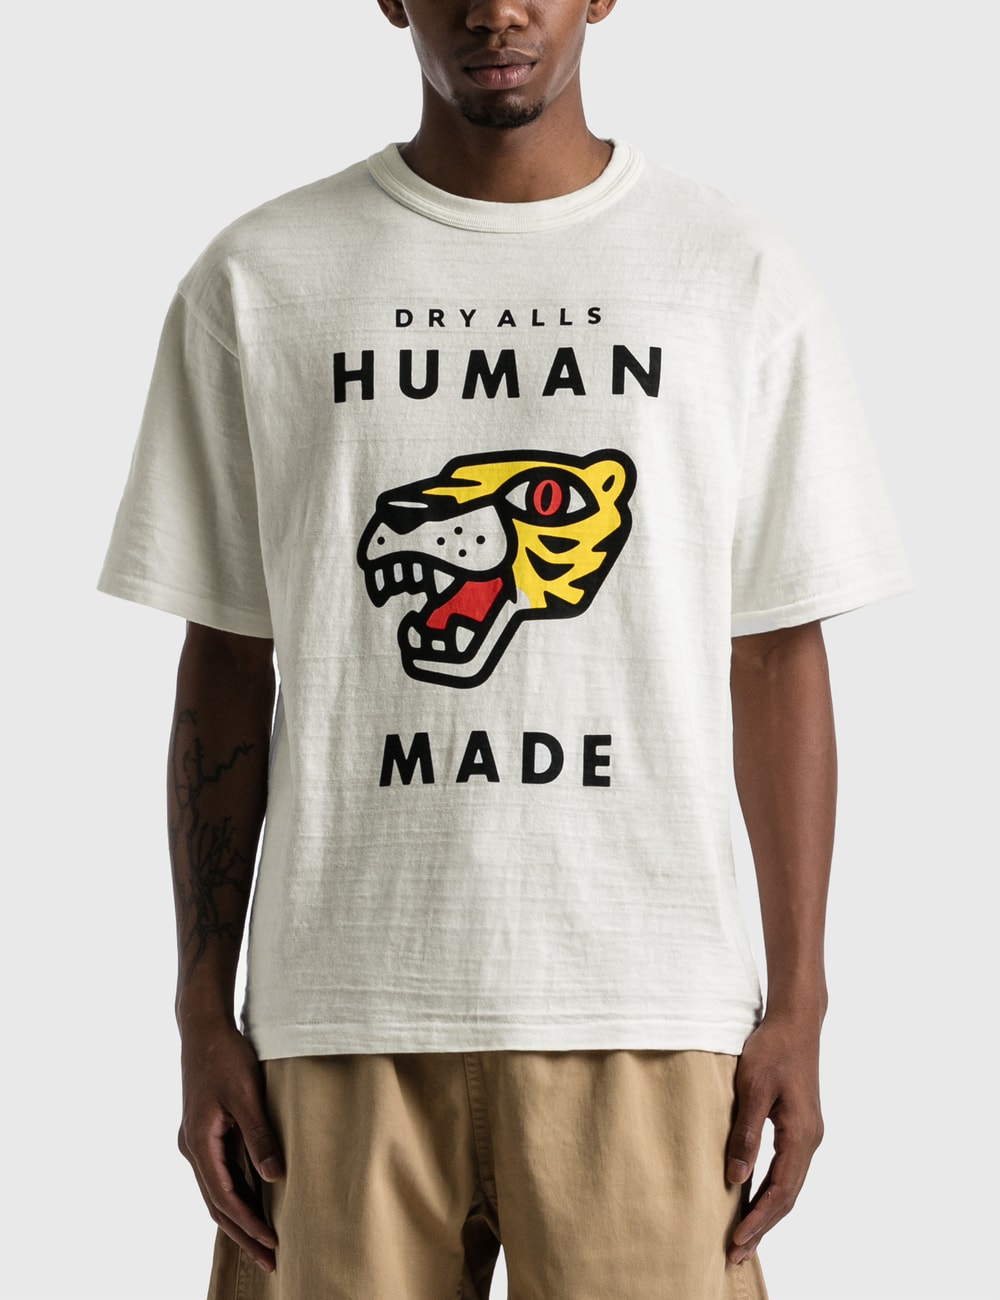 Human Made - T-shirt #2109 | HBX